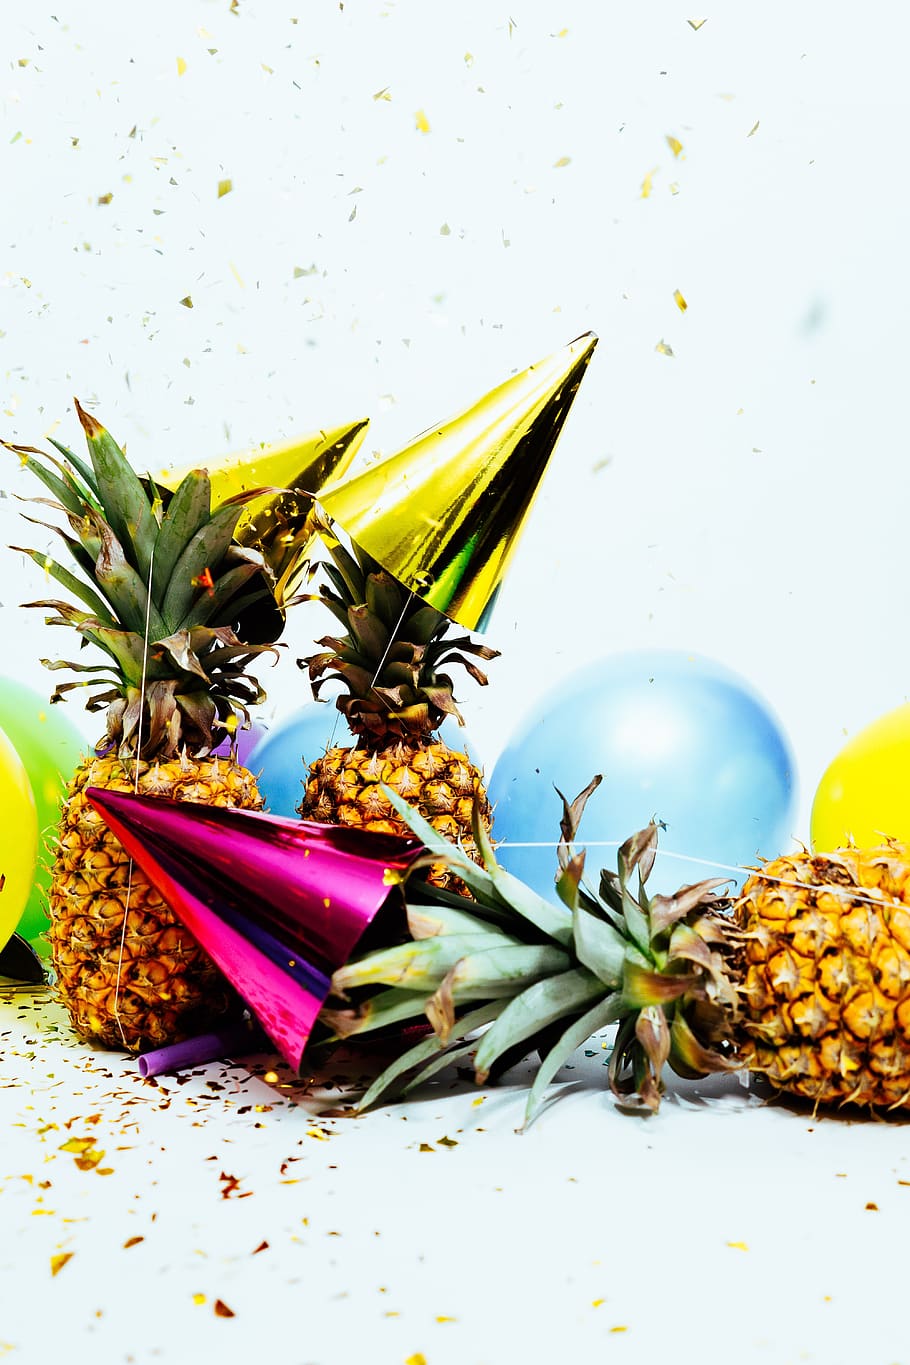 nanas, topi pesta, pesta, balon, confetti, emas, selamat ulang tahun, perayaan, tonggak sejarah, kesenangan